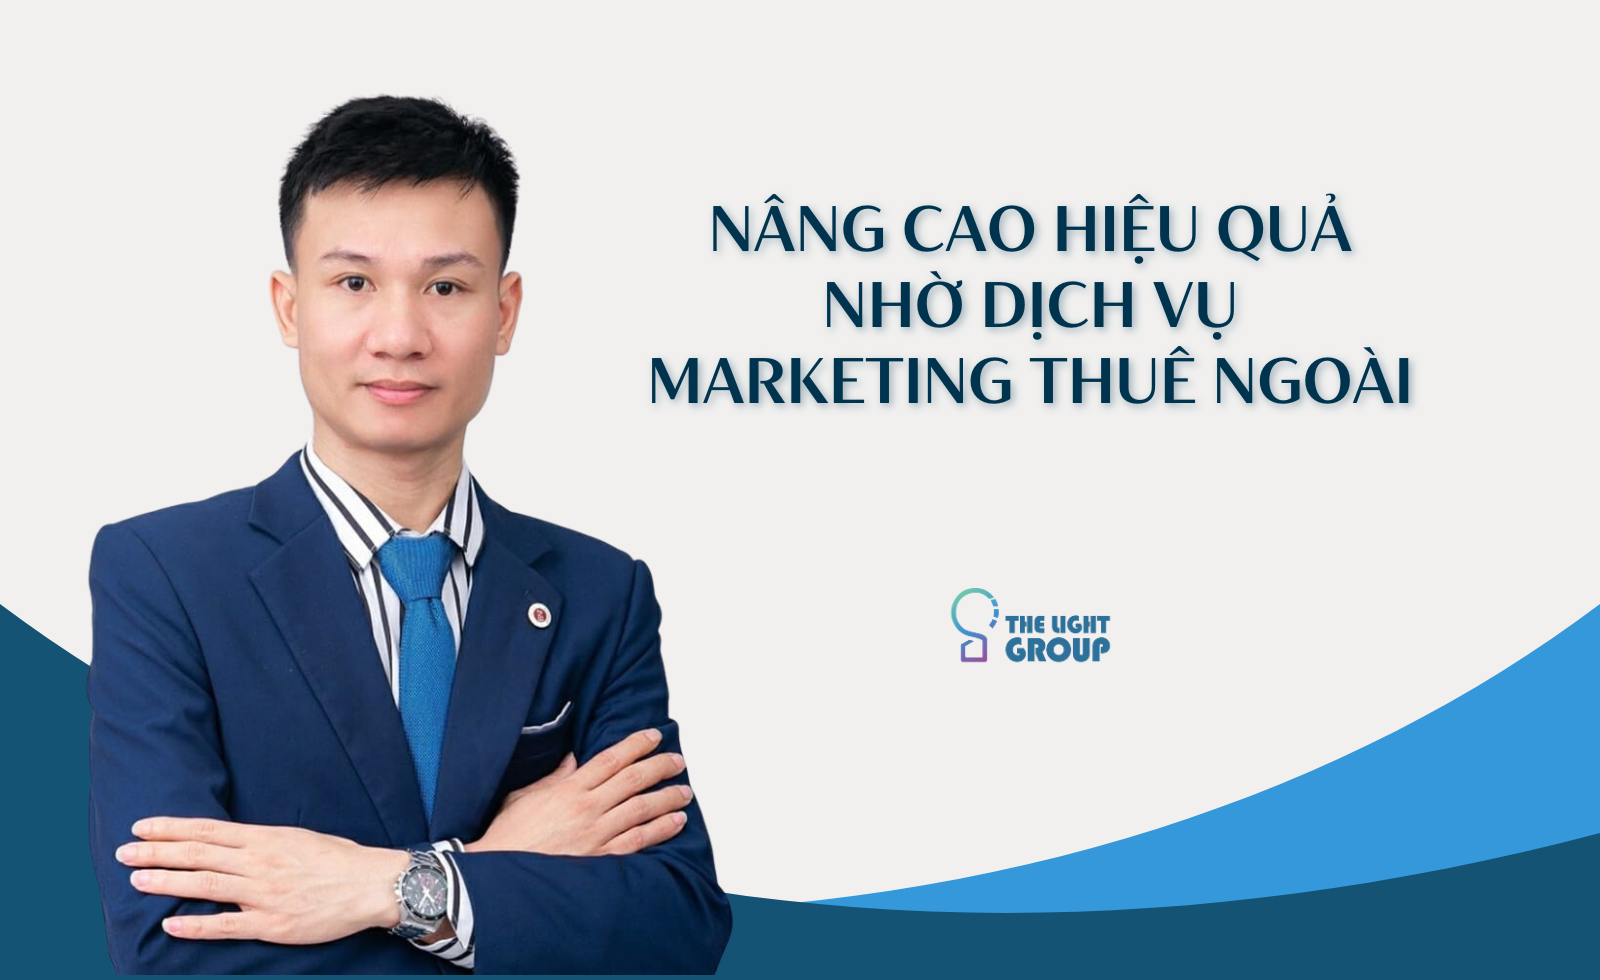 nang-cao-hieu-qua-nho-dich-vu-marketing-thue-ngoai-1693472826.png